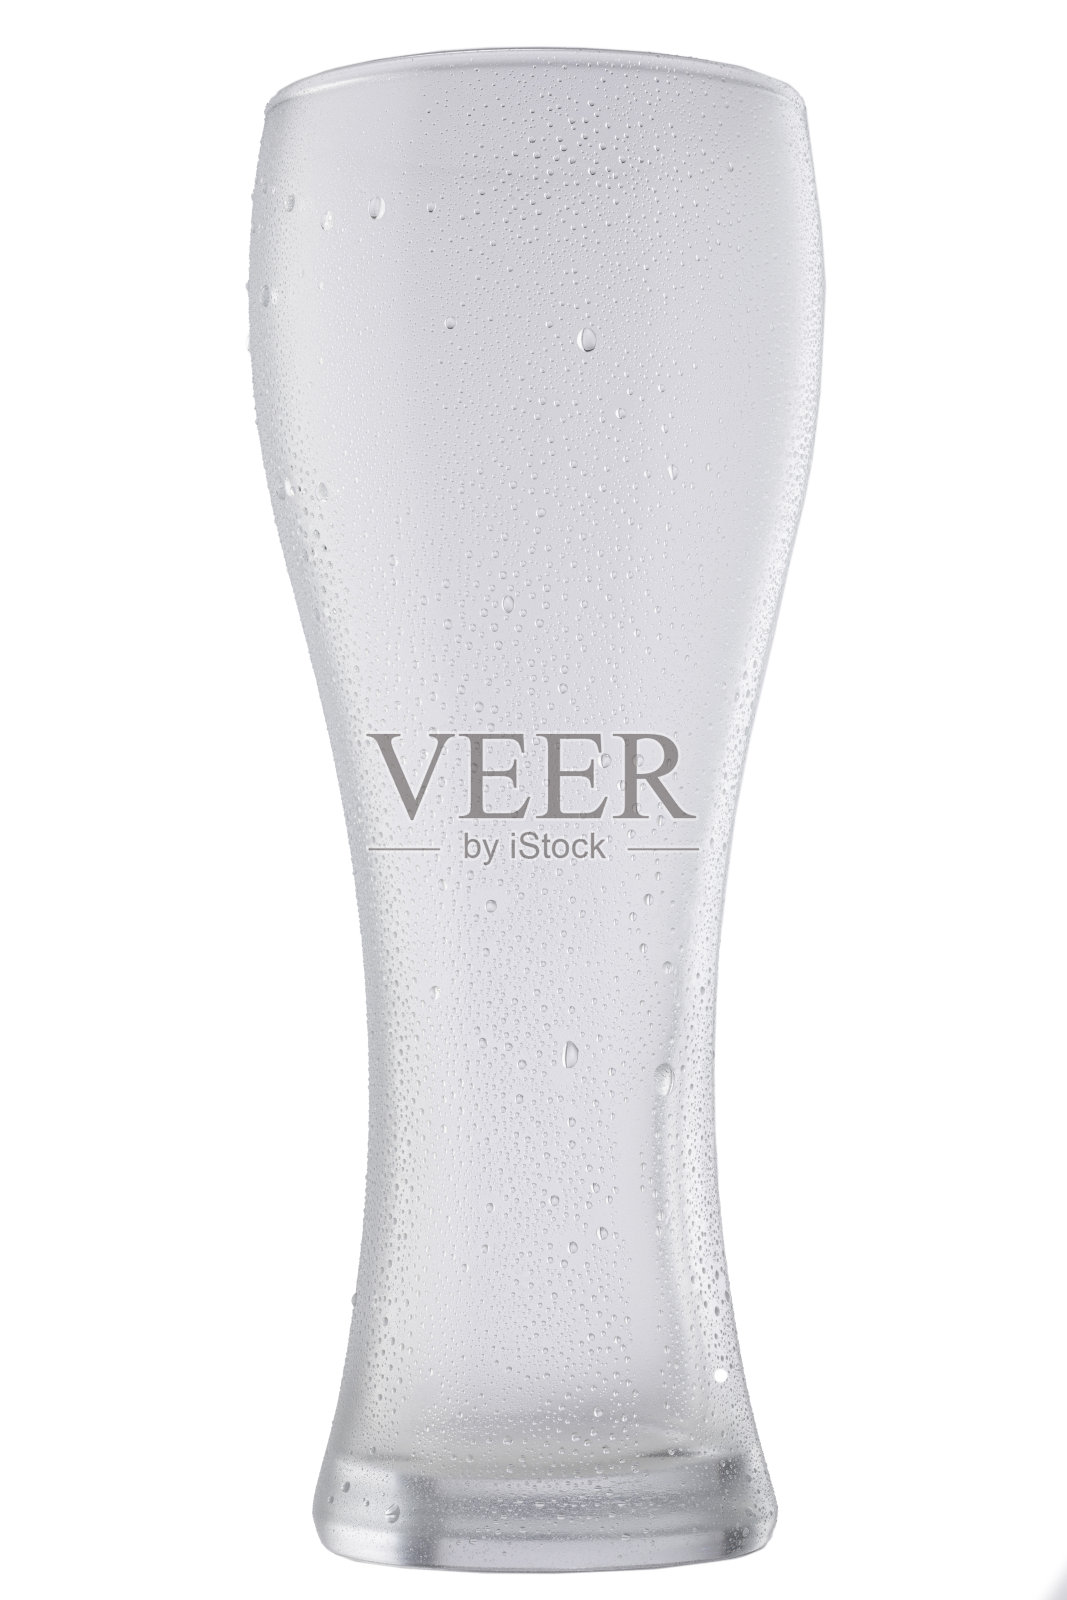 冰冷空白啤酒杯，覆盖着水珠凝结。用于饮料饮料产品的设计模型照片摄影图片